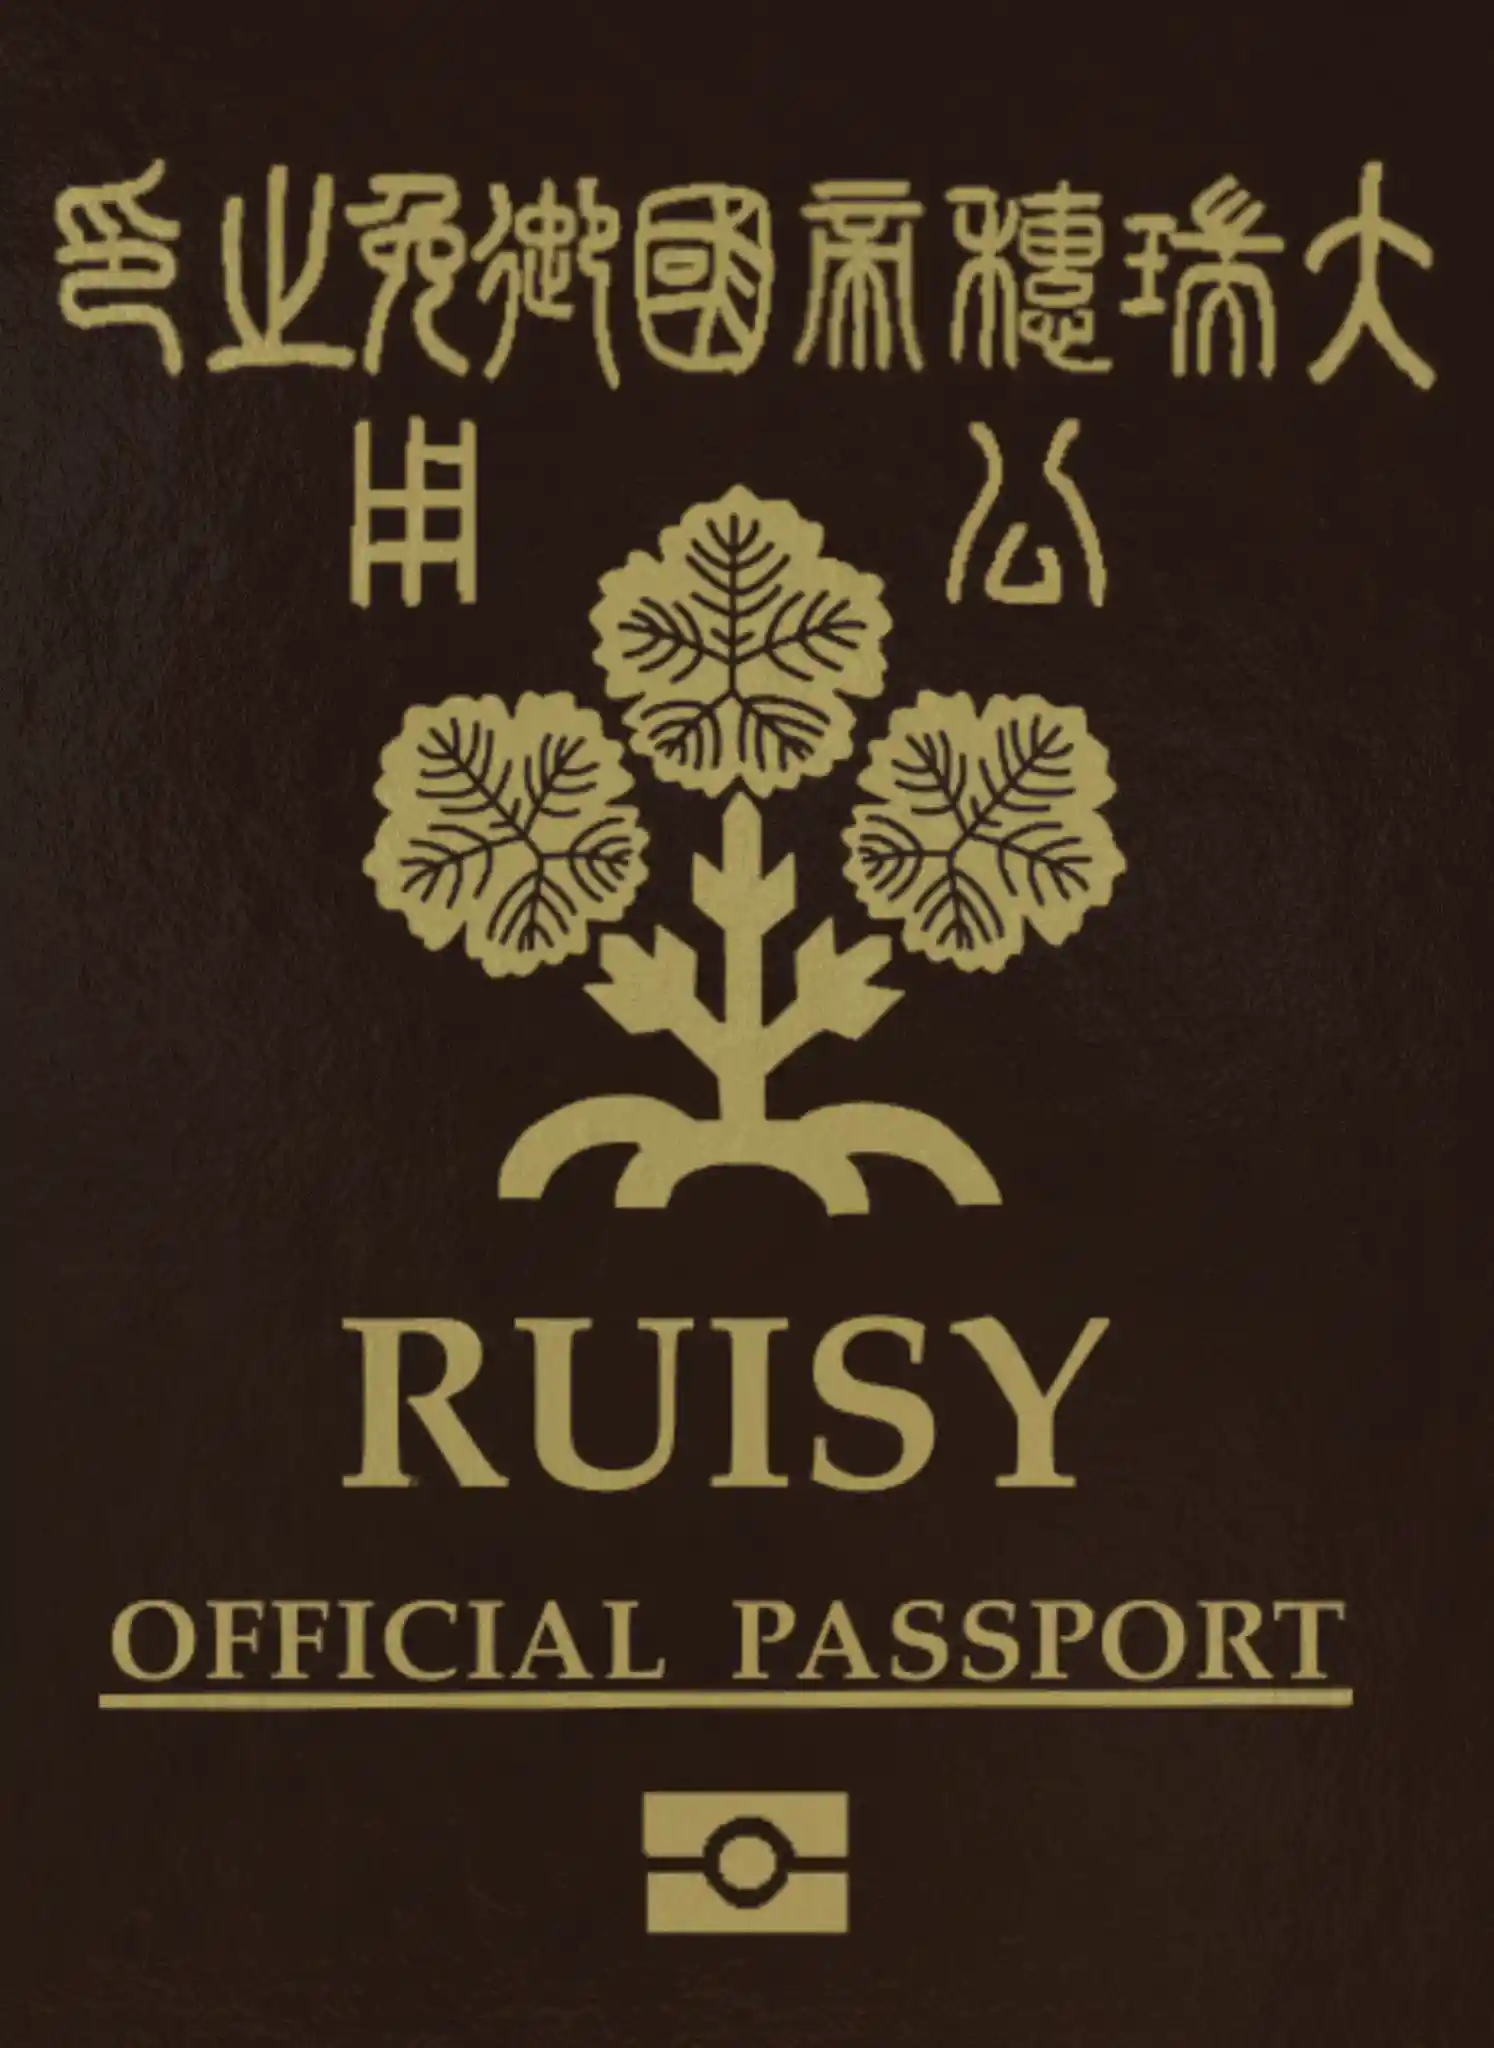 passport_official.jpg